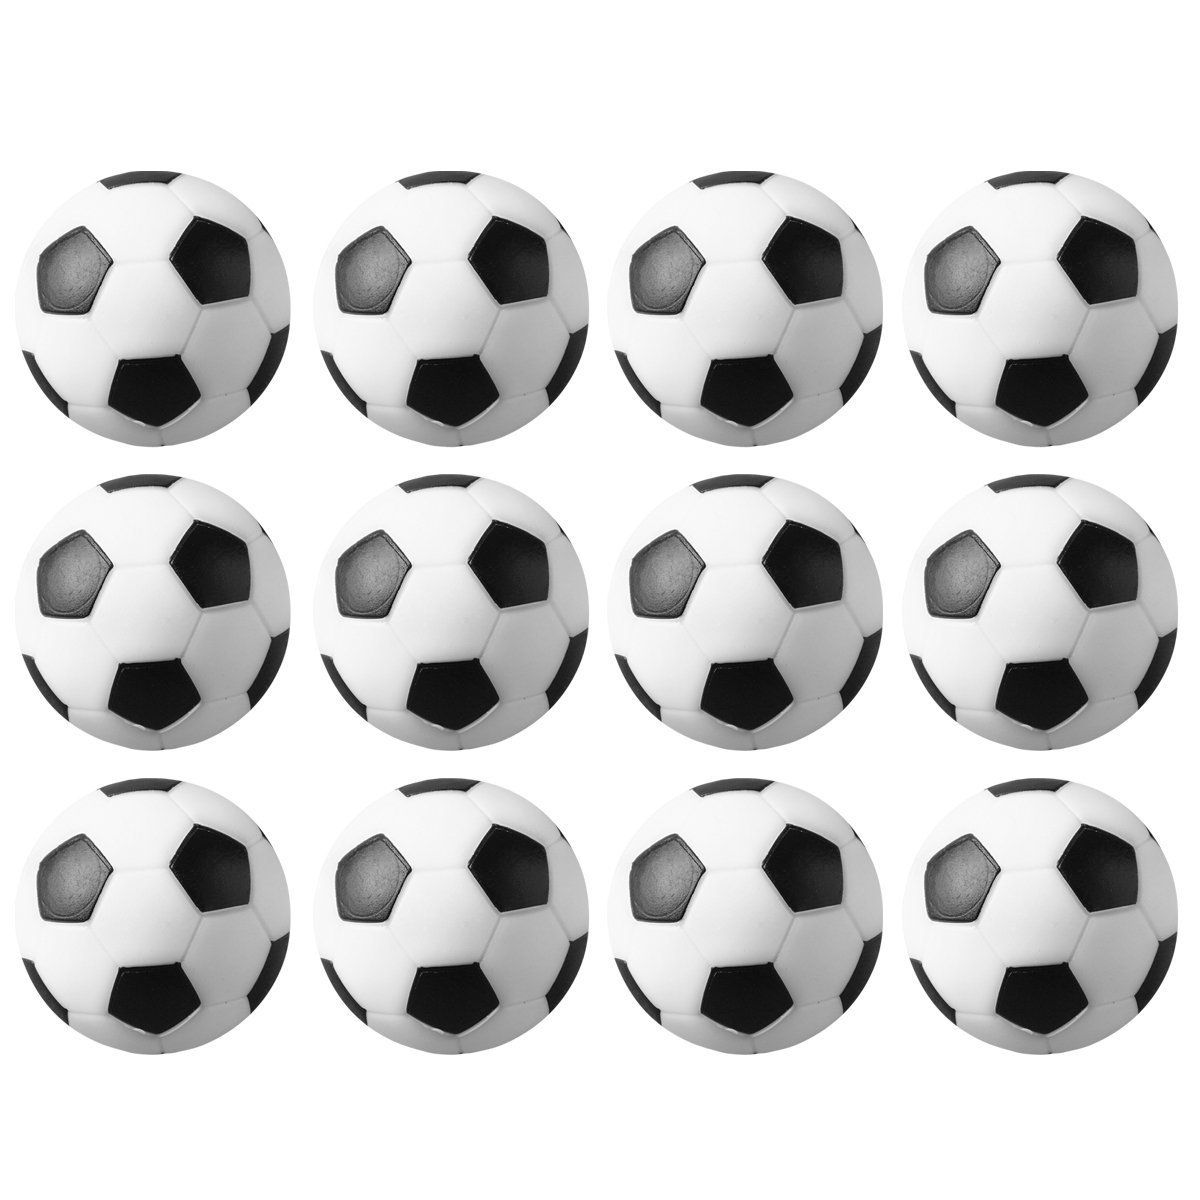 桌上足球 环保塑胶黑白小足球 直径29 31 32 36mm足球机配件细节图